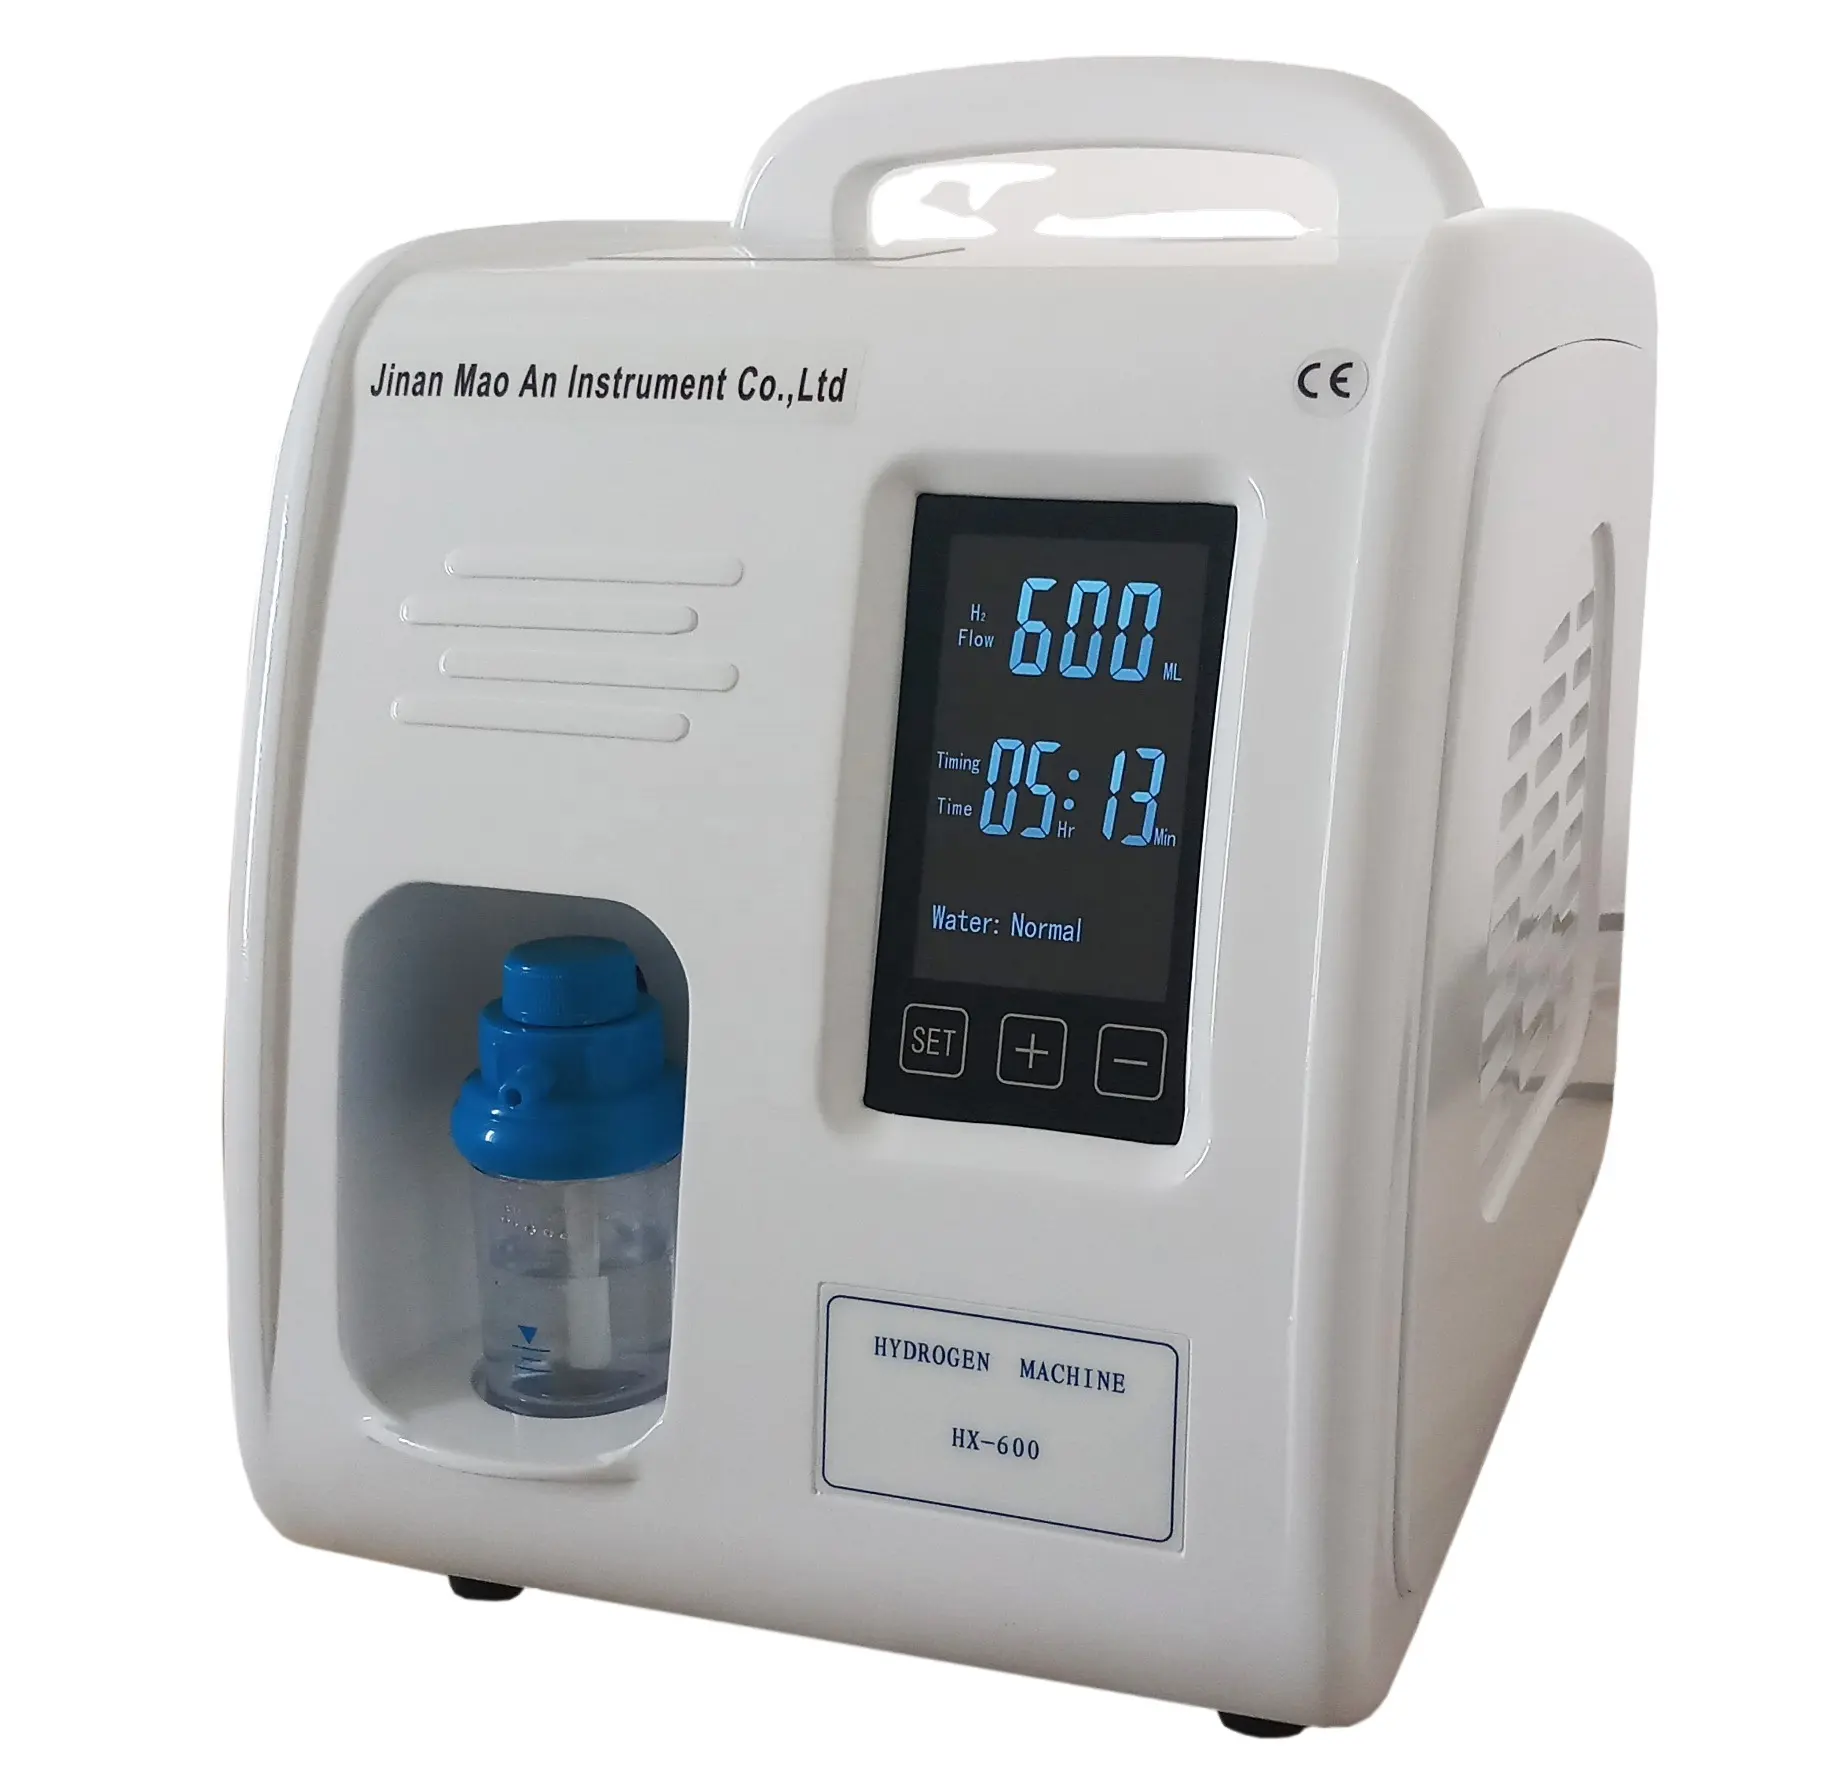 हाइड्रोजन गैस जनरेटर कीमत साँस लेने के लिए स्वास्थ्य H2 पानी और त्वचा उपचार के लिए घर में इस्तेमाल किया